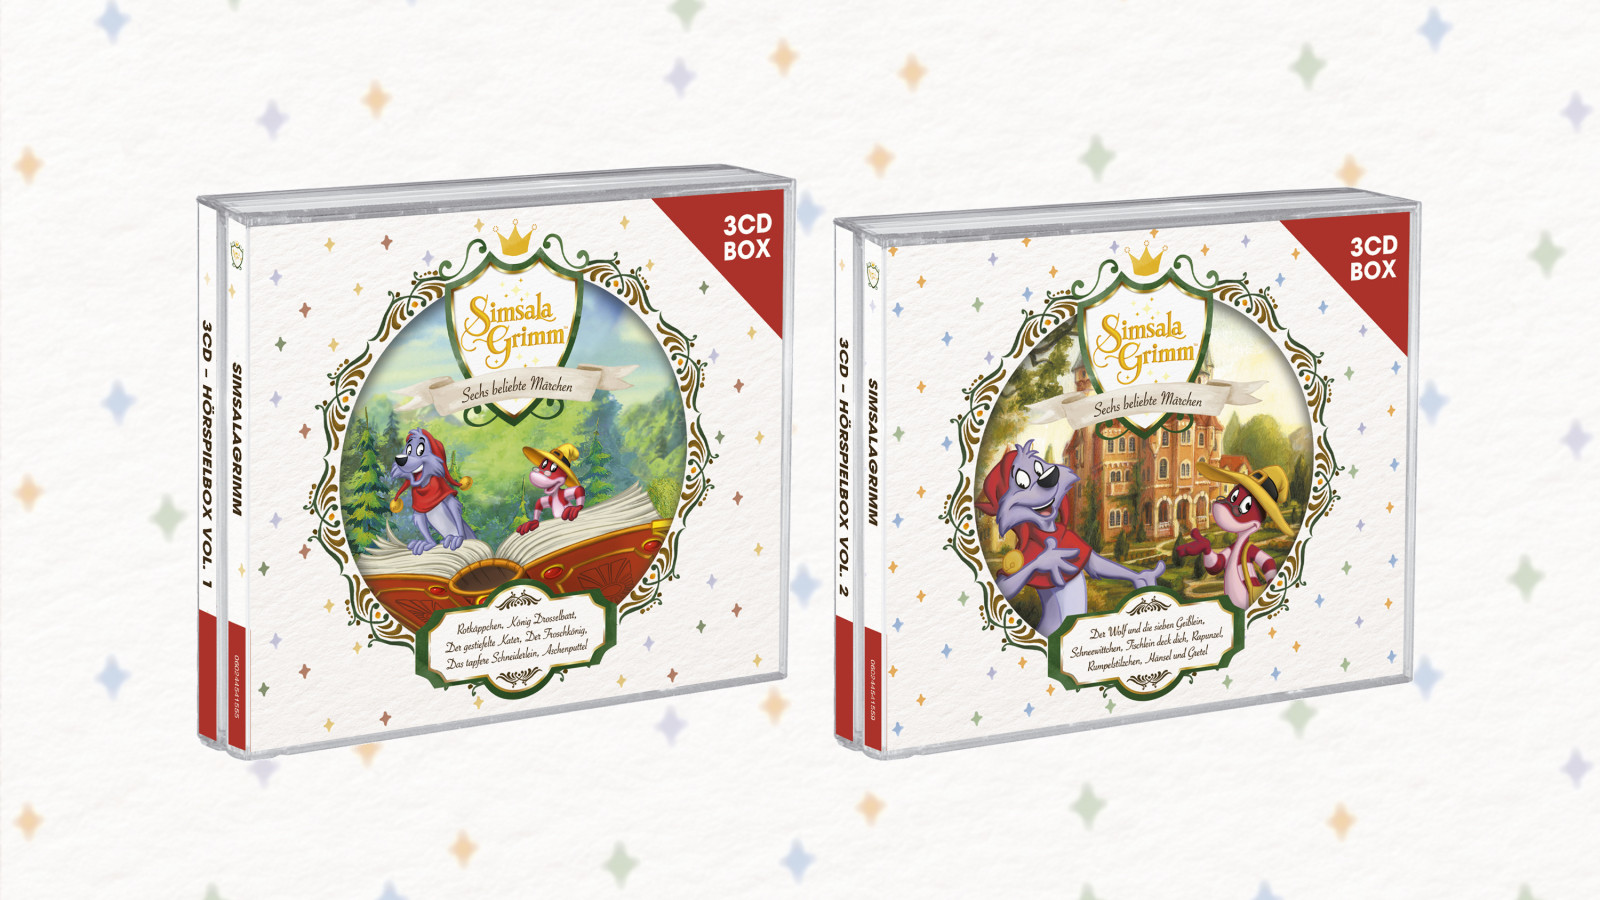 Die bekannten Märchengeschichten von SimsalaGrimm auf zwei 3CD-Hörspielboxen zusammengefasst